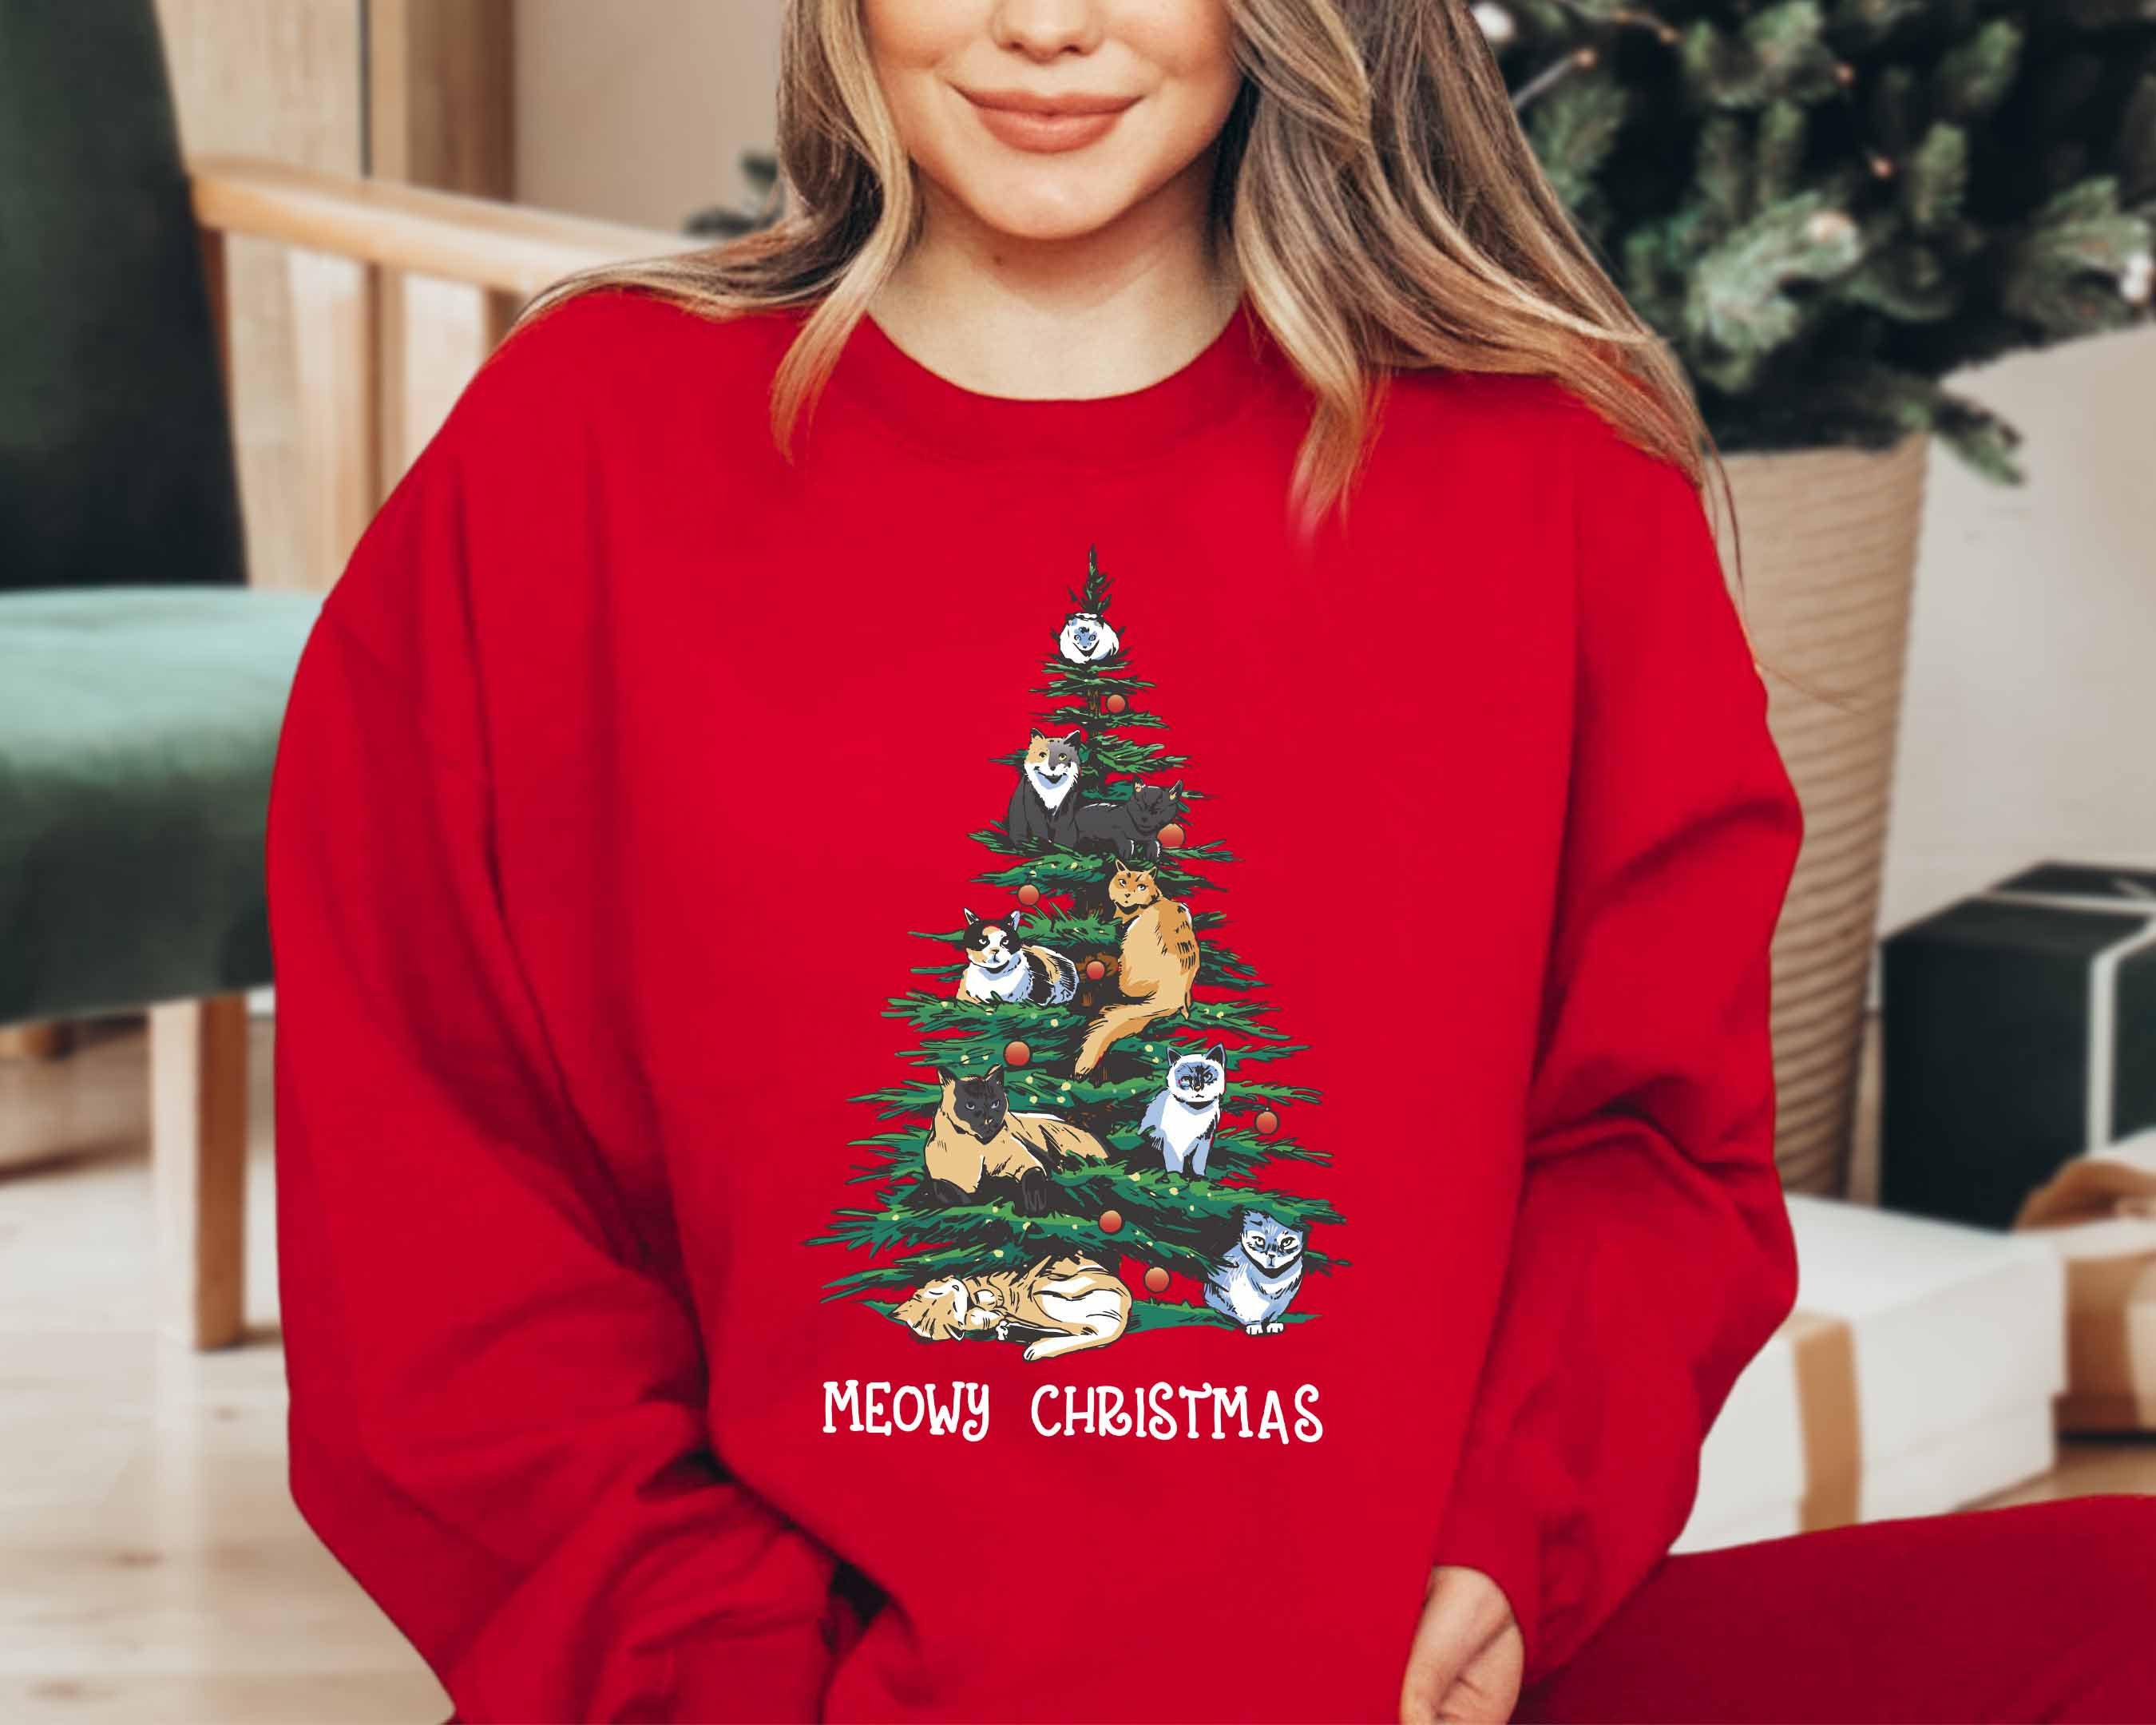 Discover Christmas Cat Sweatshirt Or Hoodie For A Christmas Outfit - Christmas Sweater, Cat Shirt, Cat Christmas graphic Tee, Christmas Crewneck sweatshirts